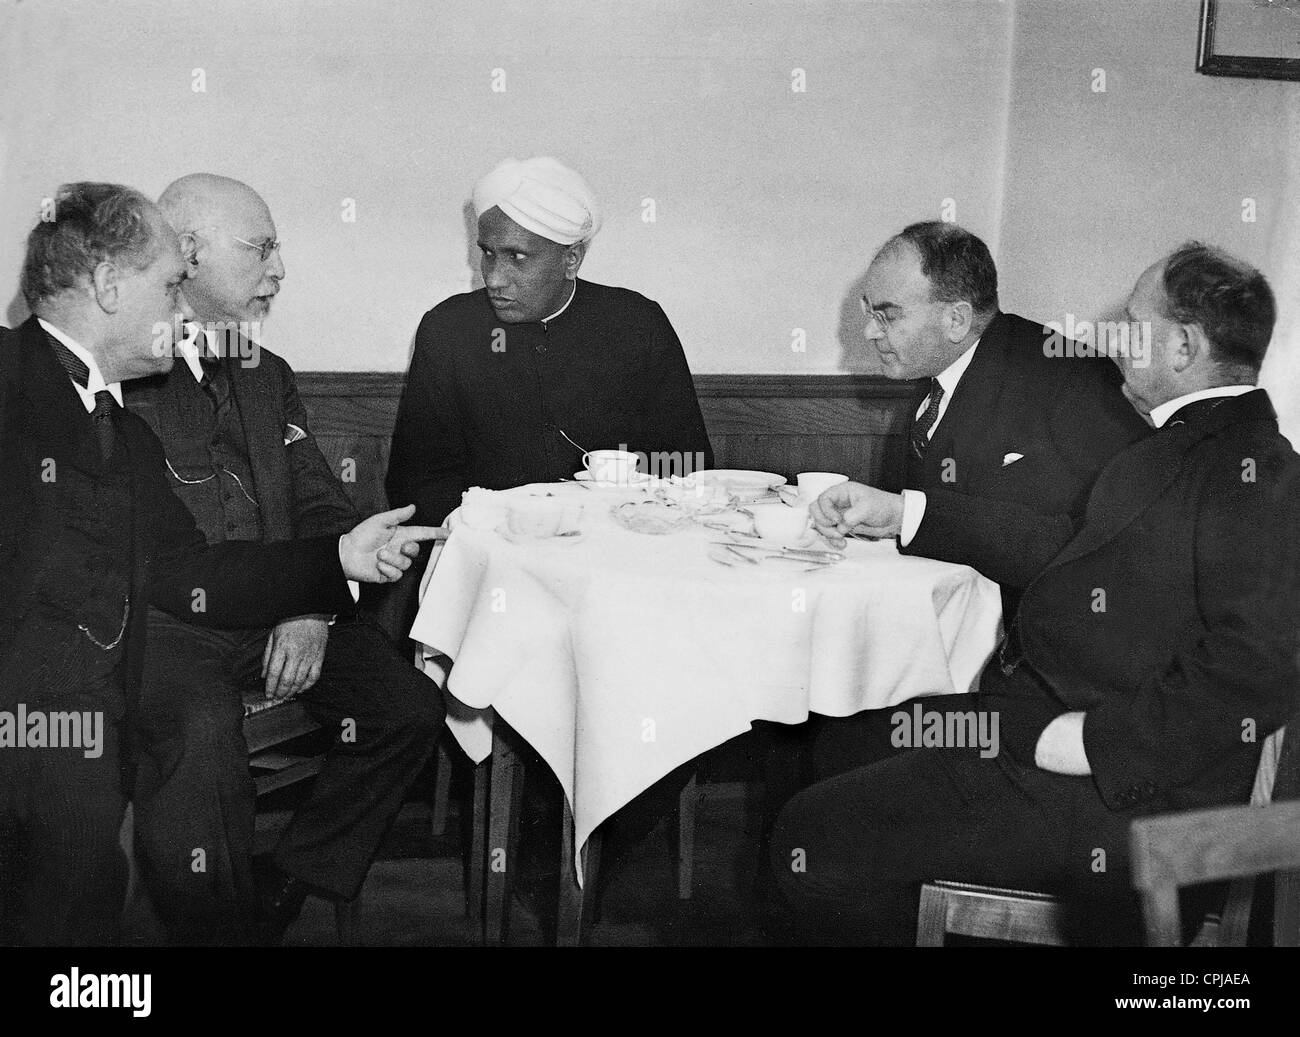 Arnold Sommerfeld, L. Scherman, Chandrasekhara Venkata Raman, Walter Straub y Hans Fischer, 1931 Foto de stock